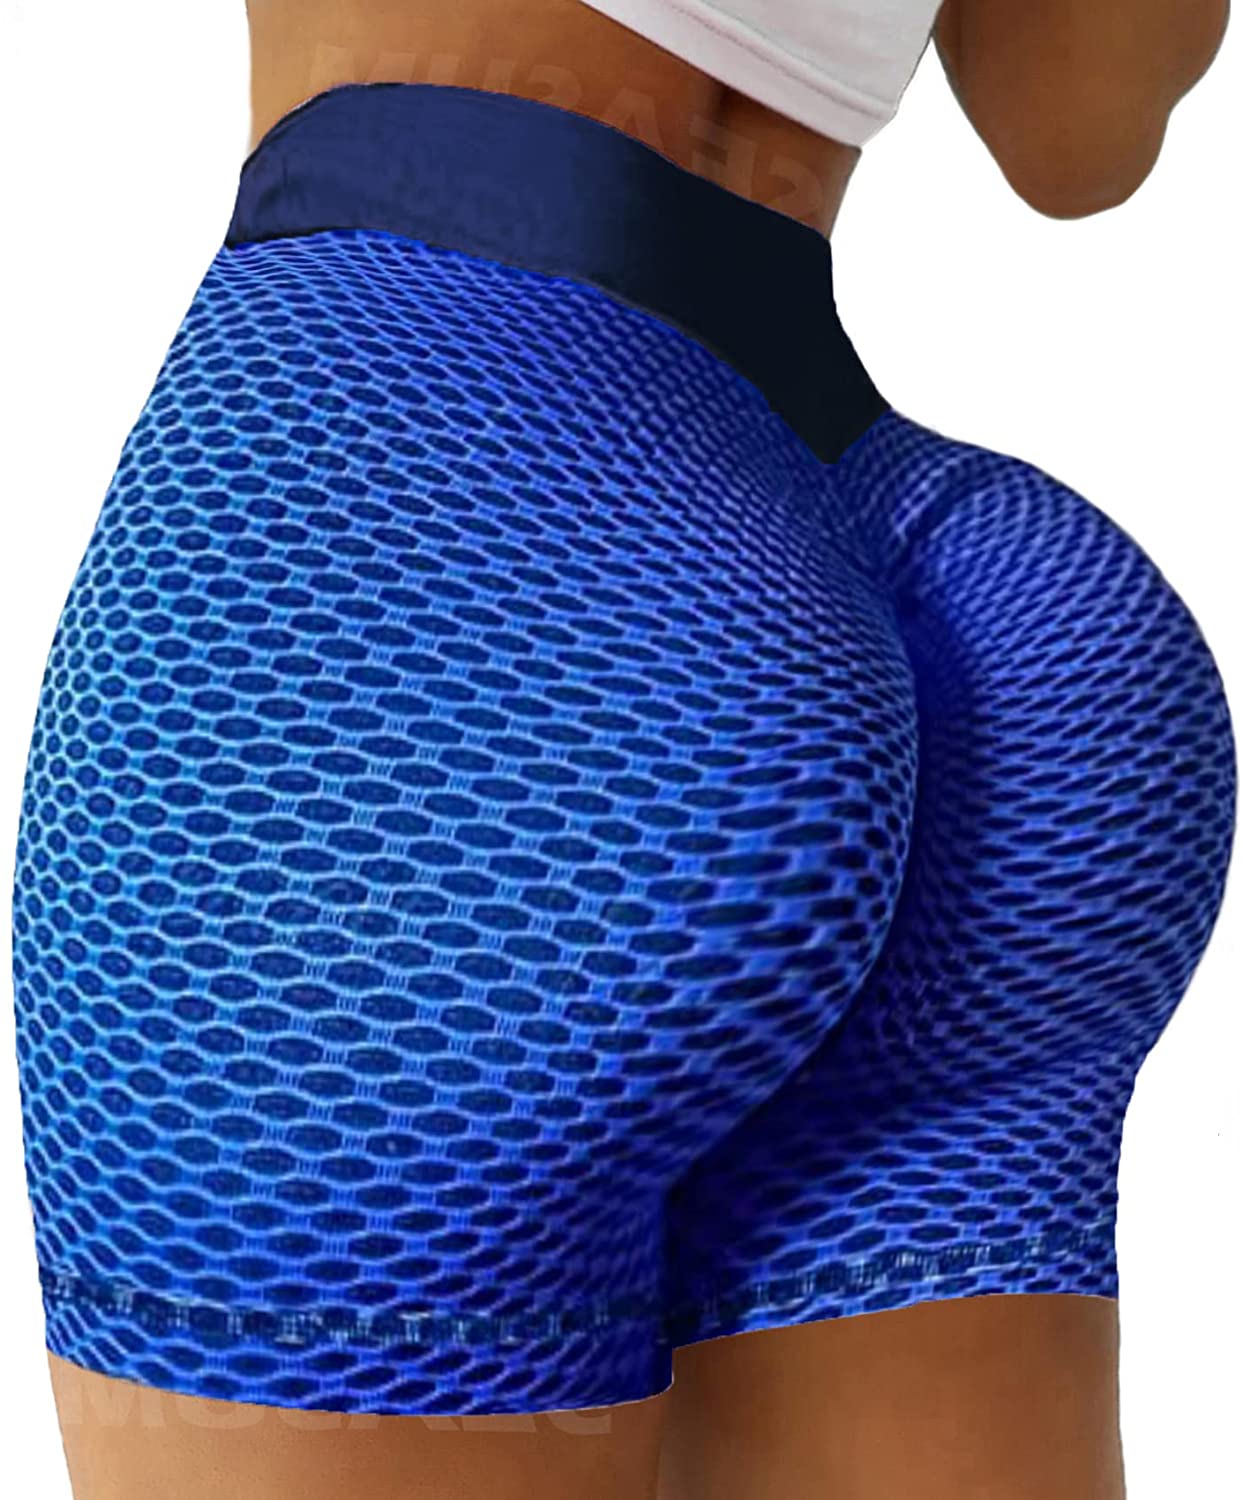 SEASUM Women Workout Booty Shorts Scrunch Butt Lifting Yoga Shorts